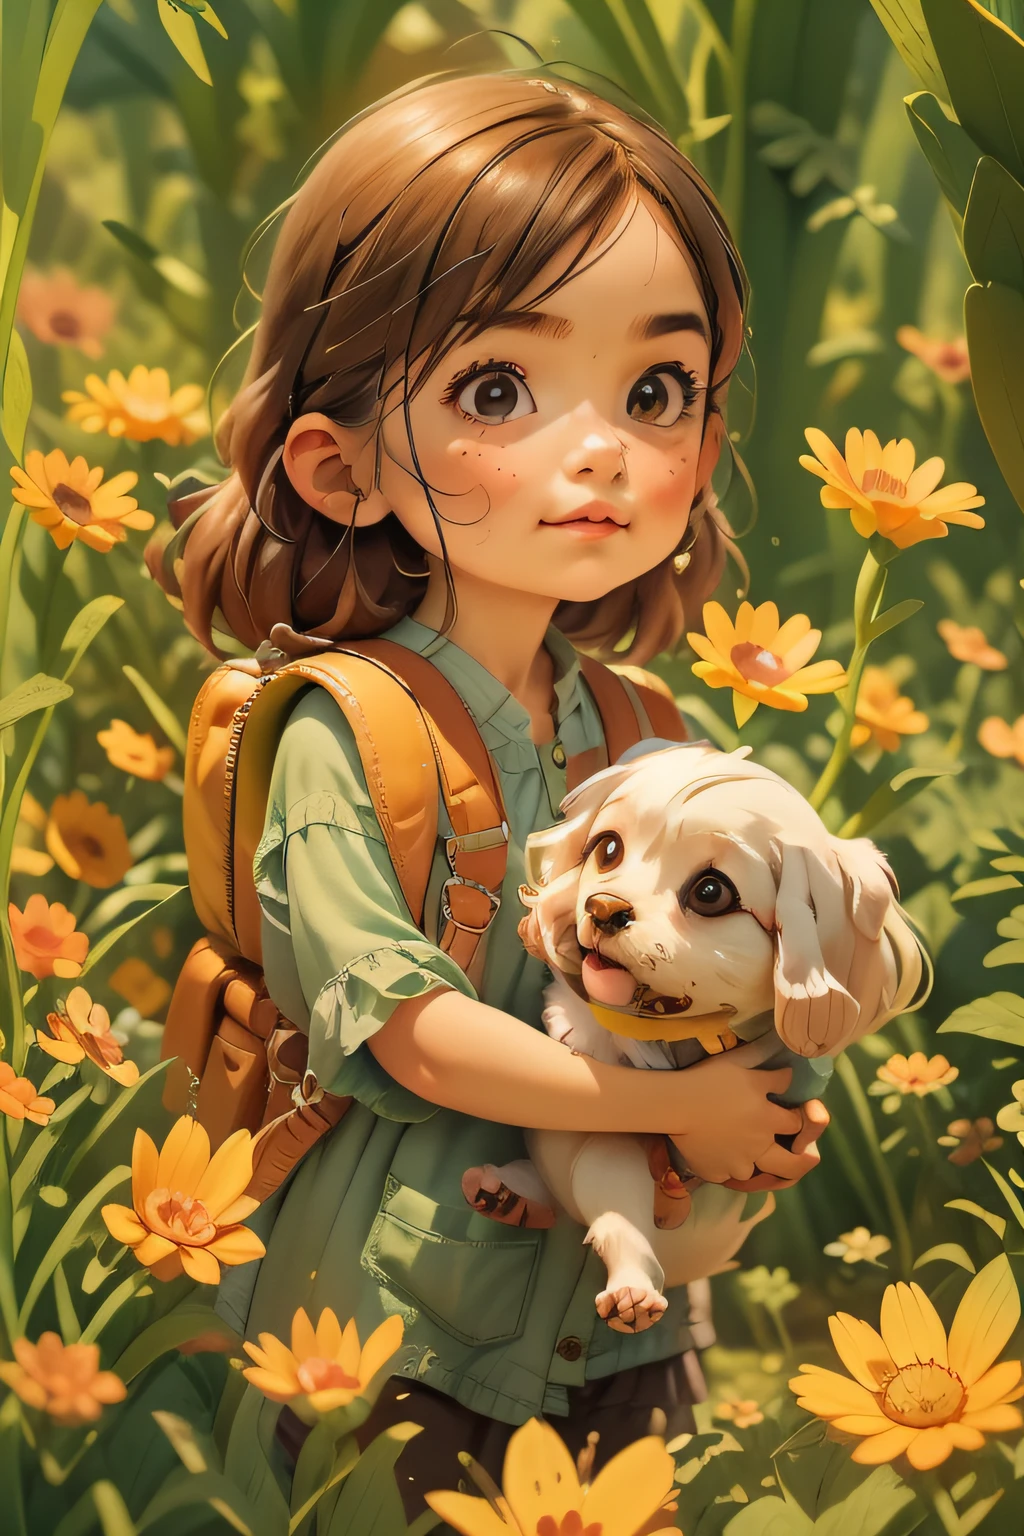 バックパックを背負ったとても魅力的な女性と彼女のかわいい犬が、美しい黄色い花と自然に囲まれた素敵な春の外出を楽しんでいます。. このイラストは、非常に詳細な顔の特徴と漫画風のビジュアルを備えた4K解像度の高精細イラストです。.